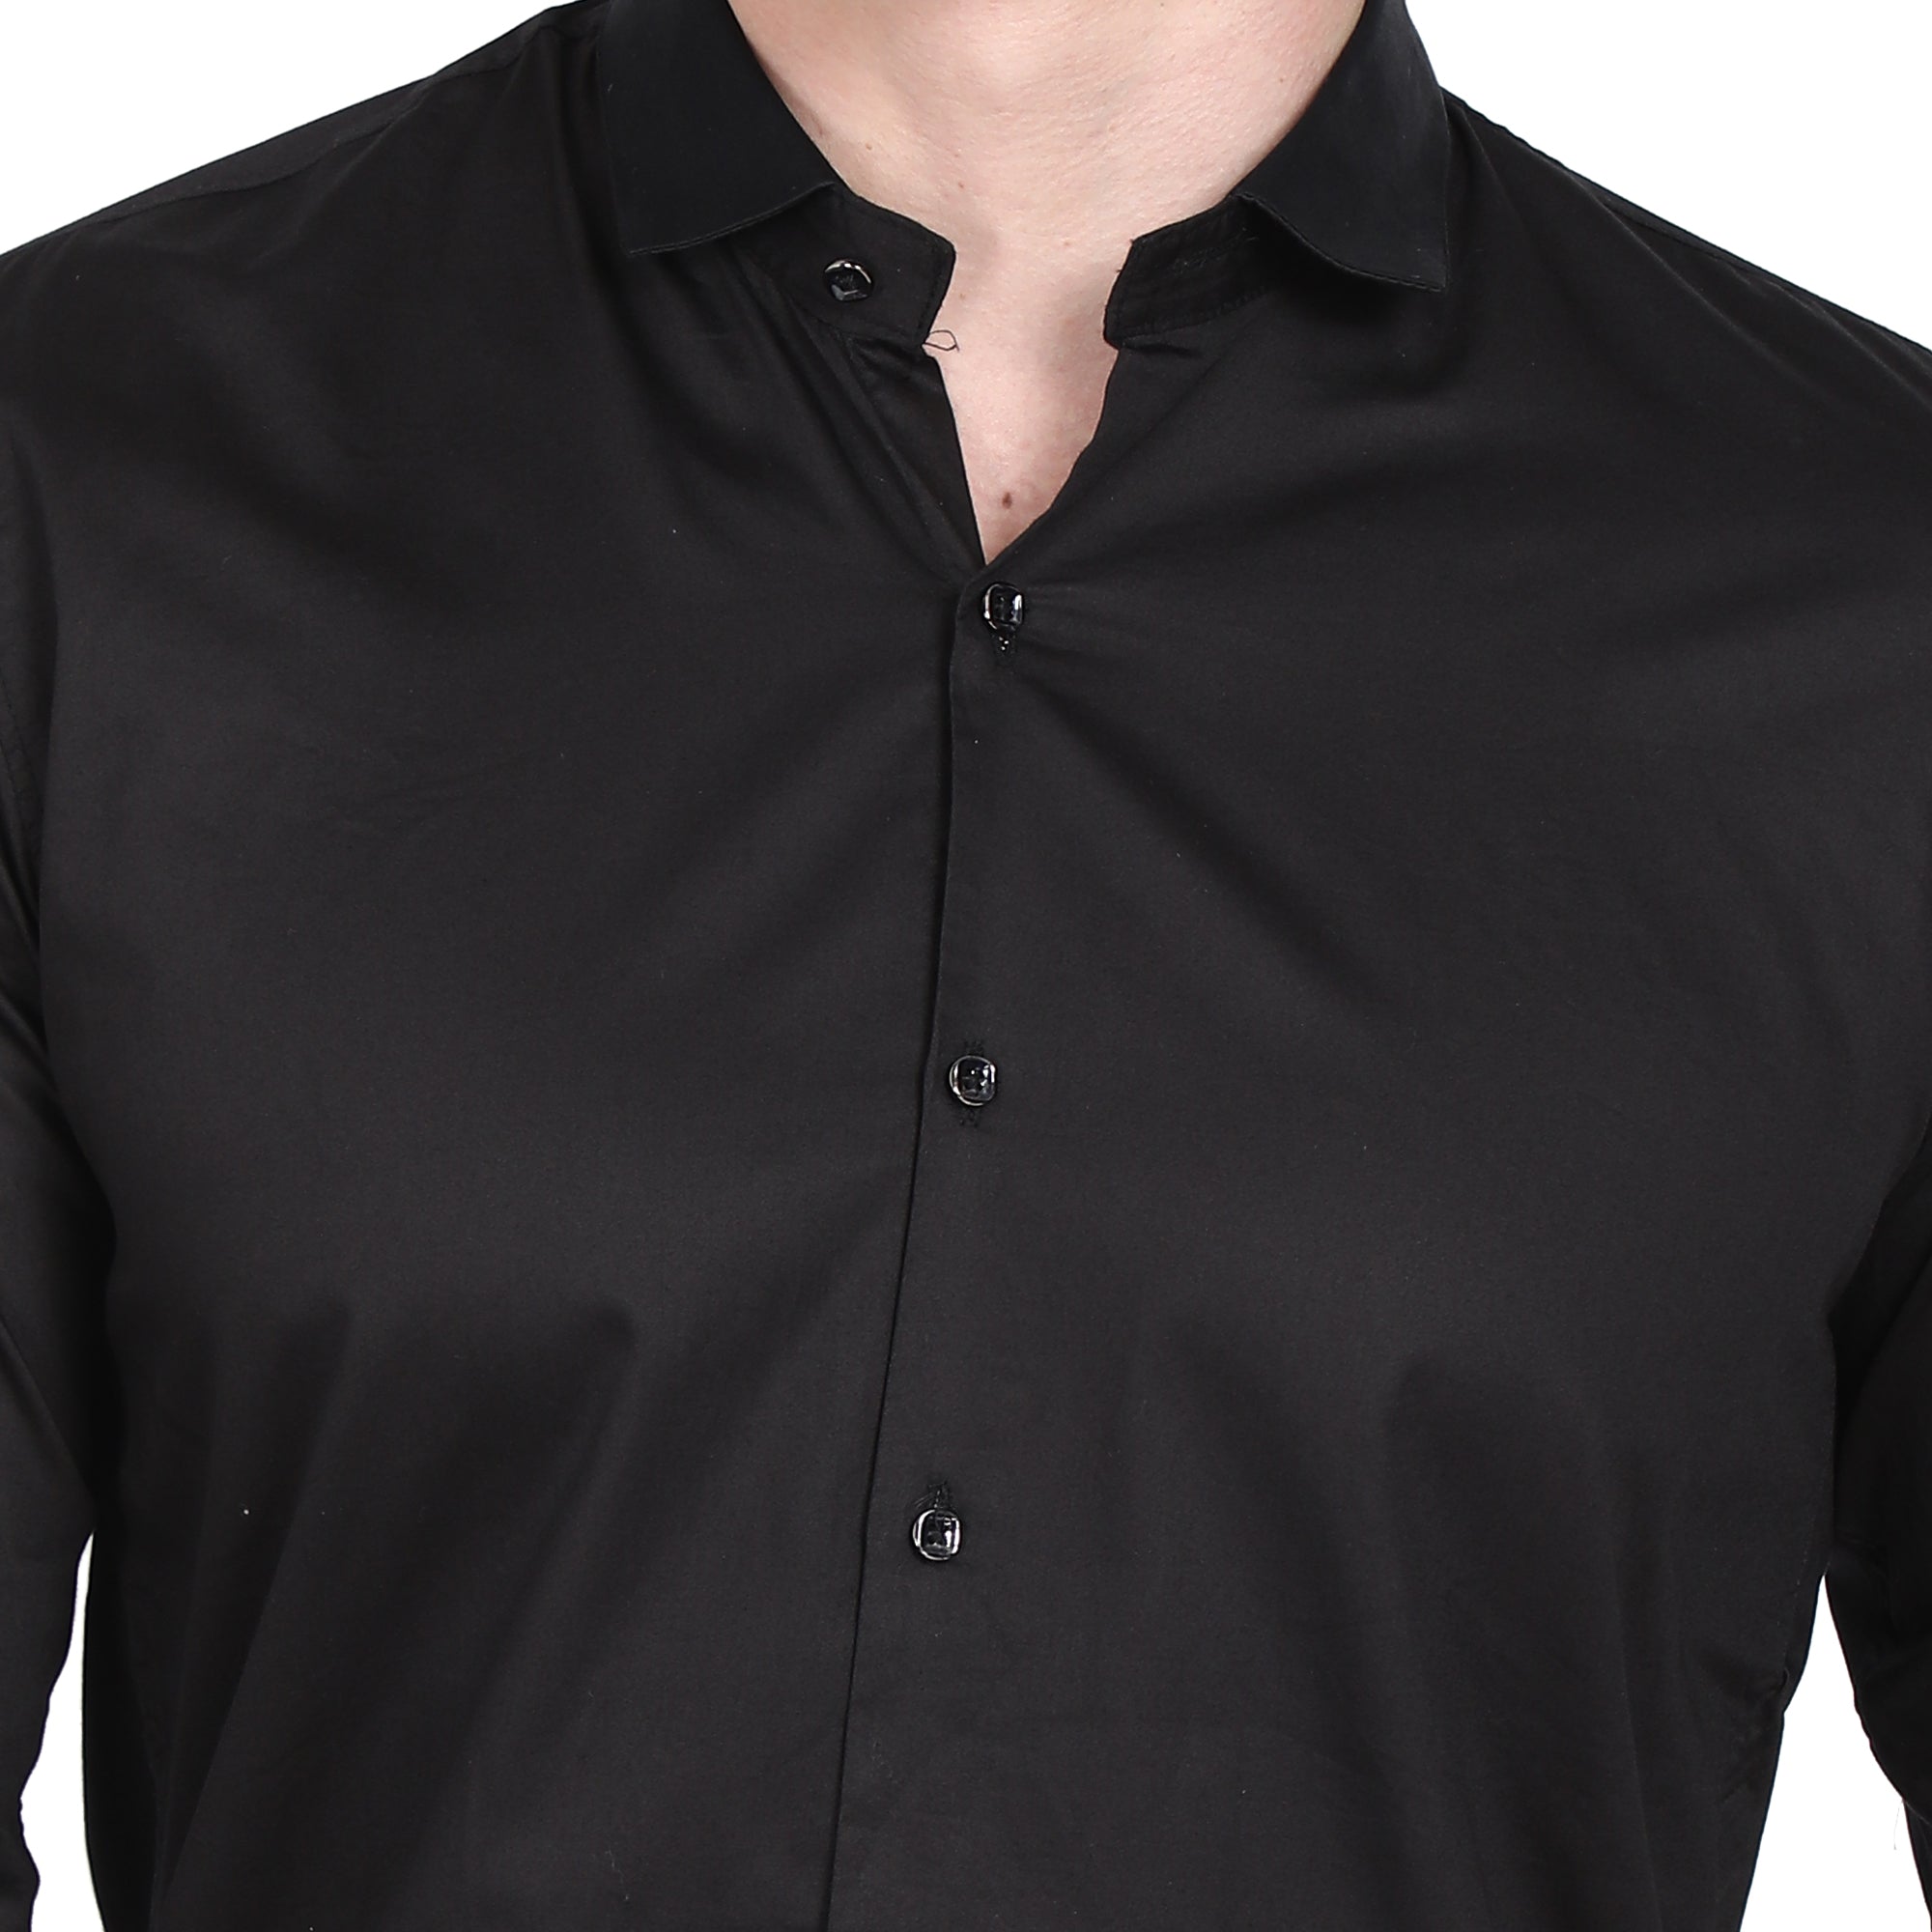 Men Casual Cotton Shirts - Black Colour